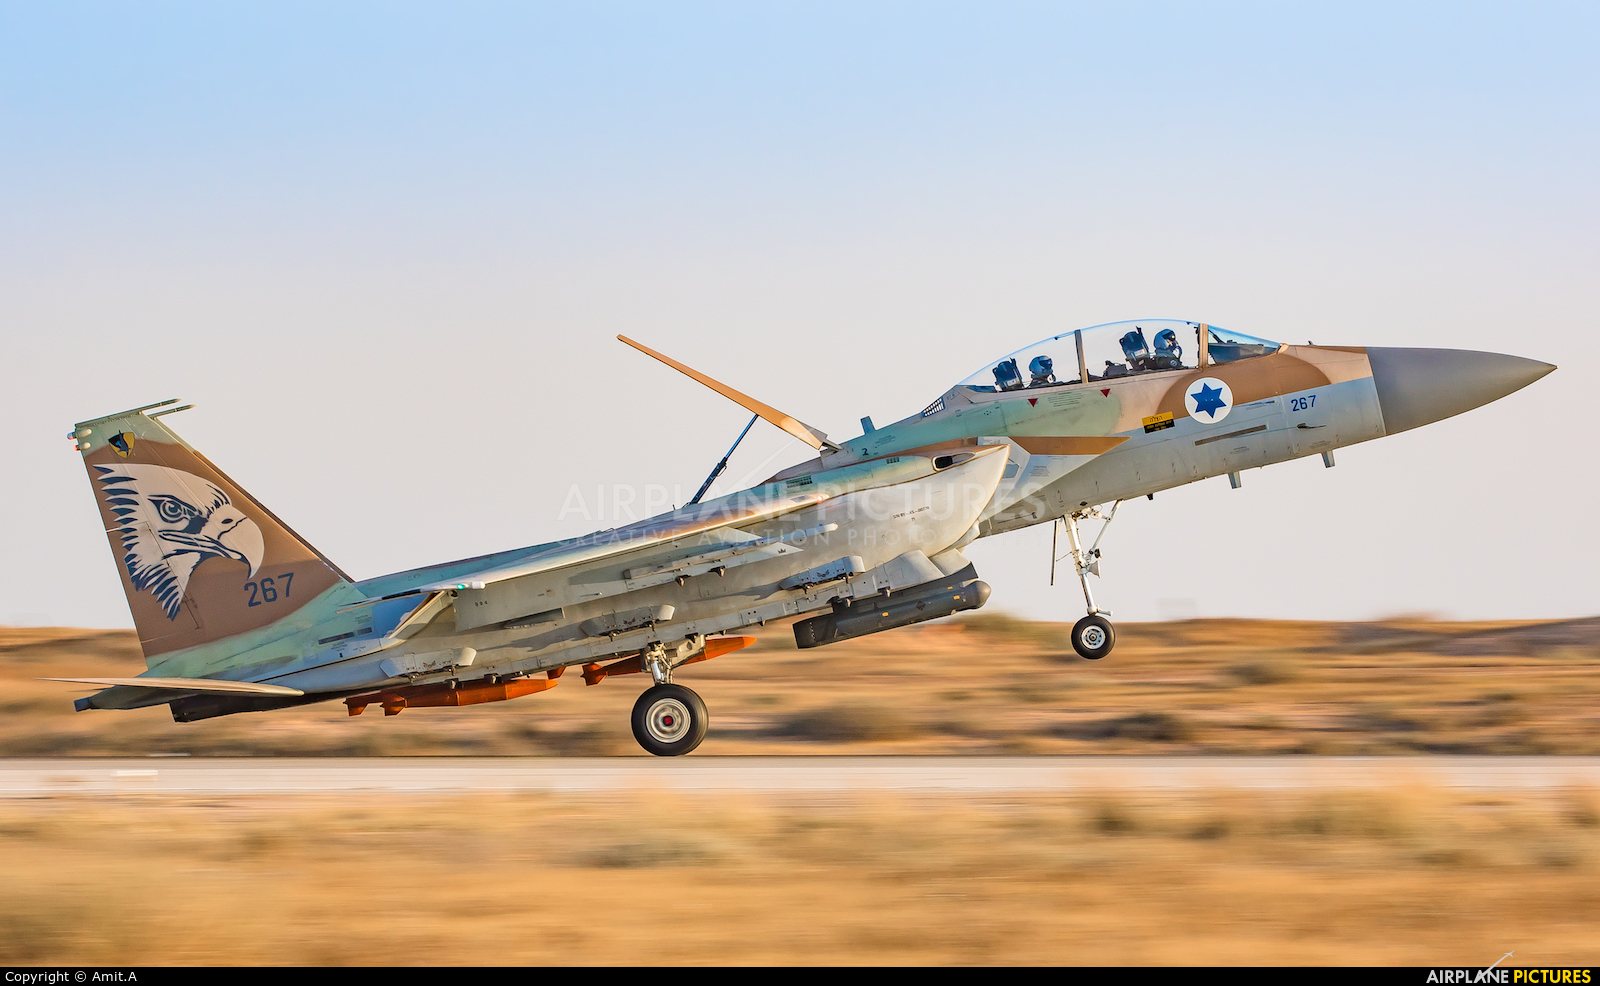 航空宇宙ビジネス短信t2 軍事航空 空軍 海軍 安全保障 地政学 Isr なぜイスラエル空軍はf 35よりf 15新型機導入に傾くのか